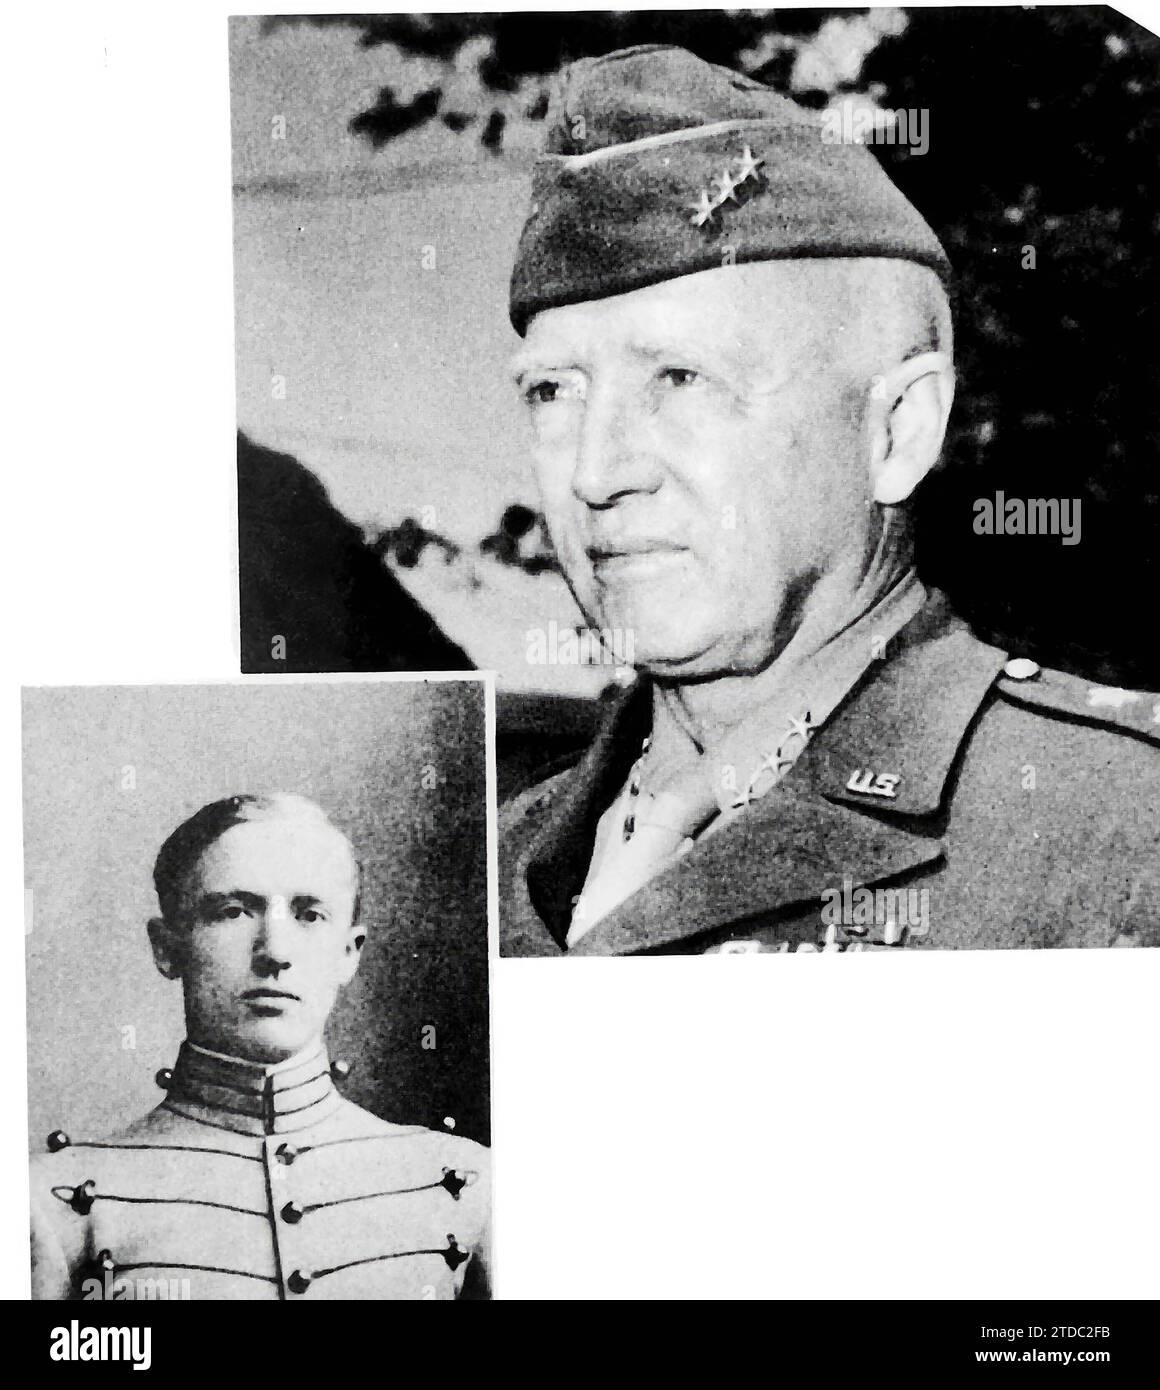 12/31/1939. George S. Patton in zwei Phasen seines Lebens: Als Kadett an der West Point Military Academy und als General. Quelle: Album/Archivo ABC Stockfoto